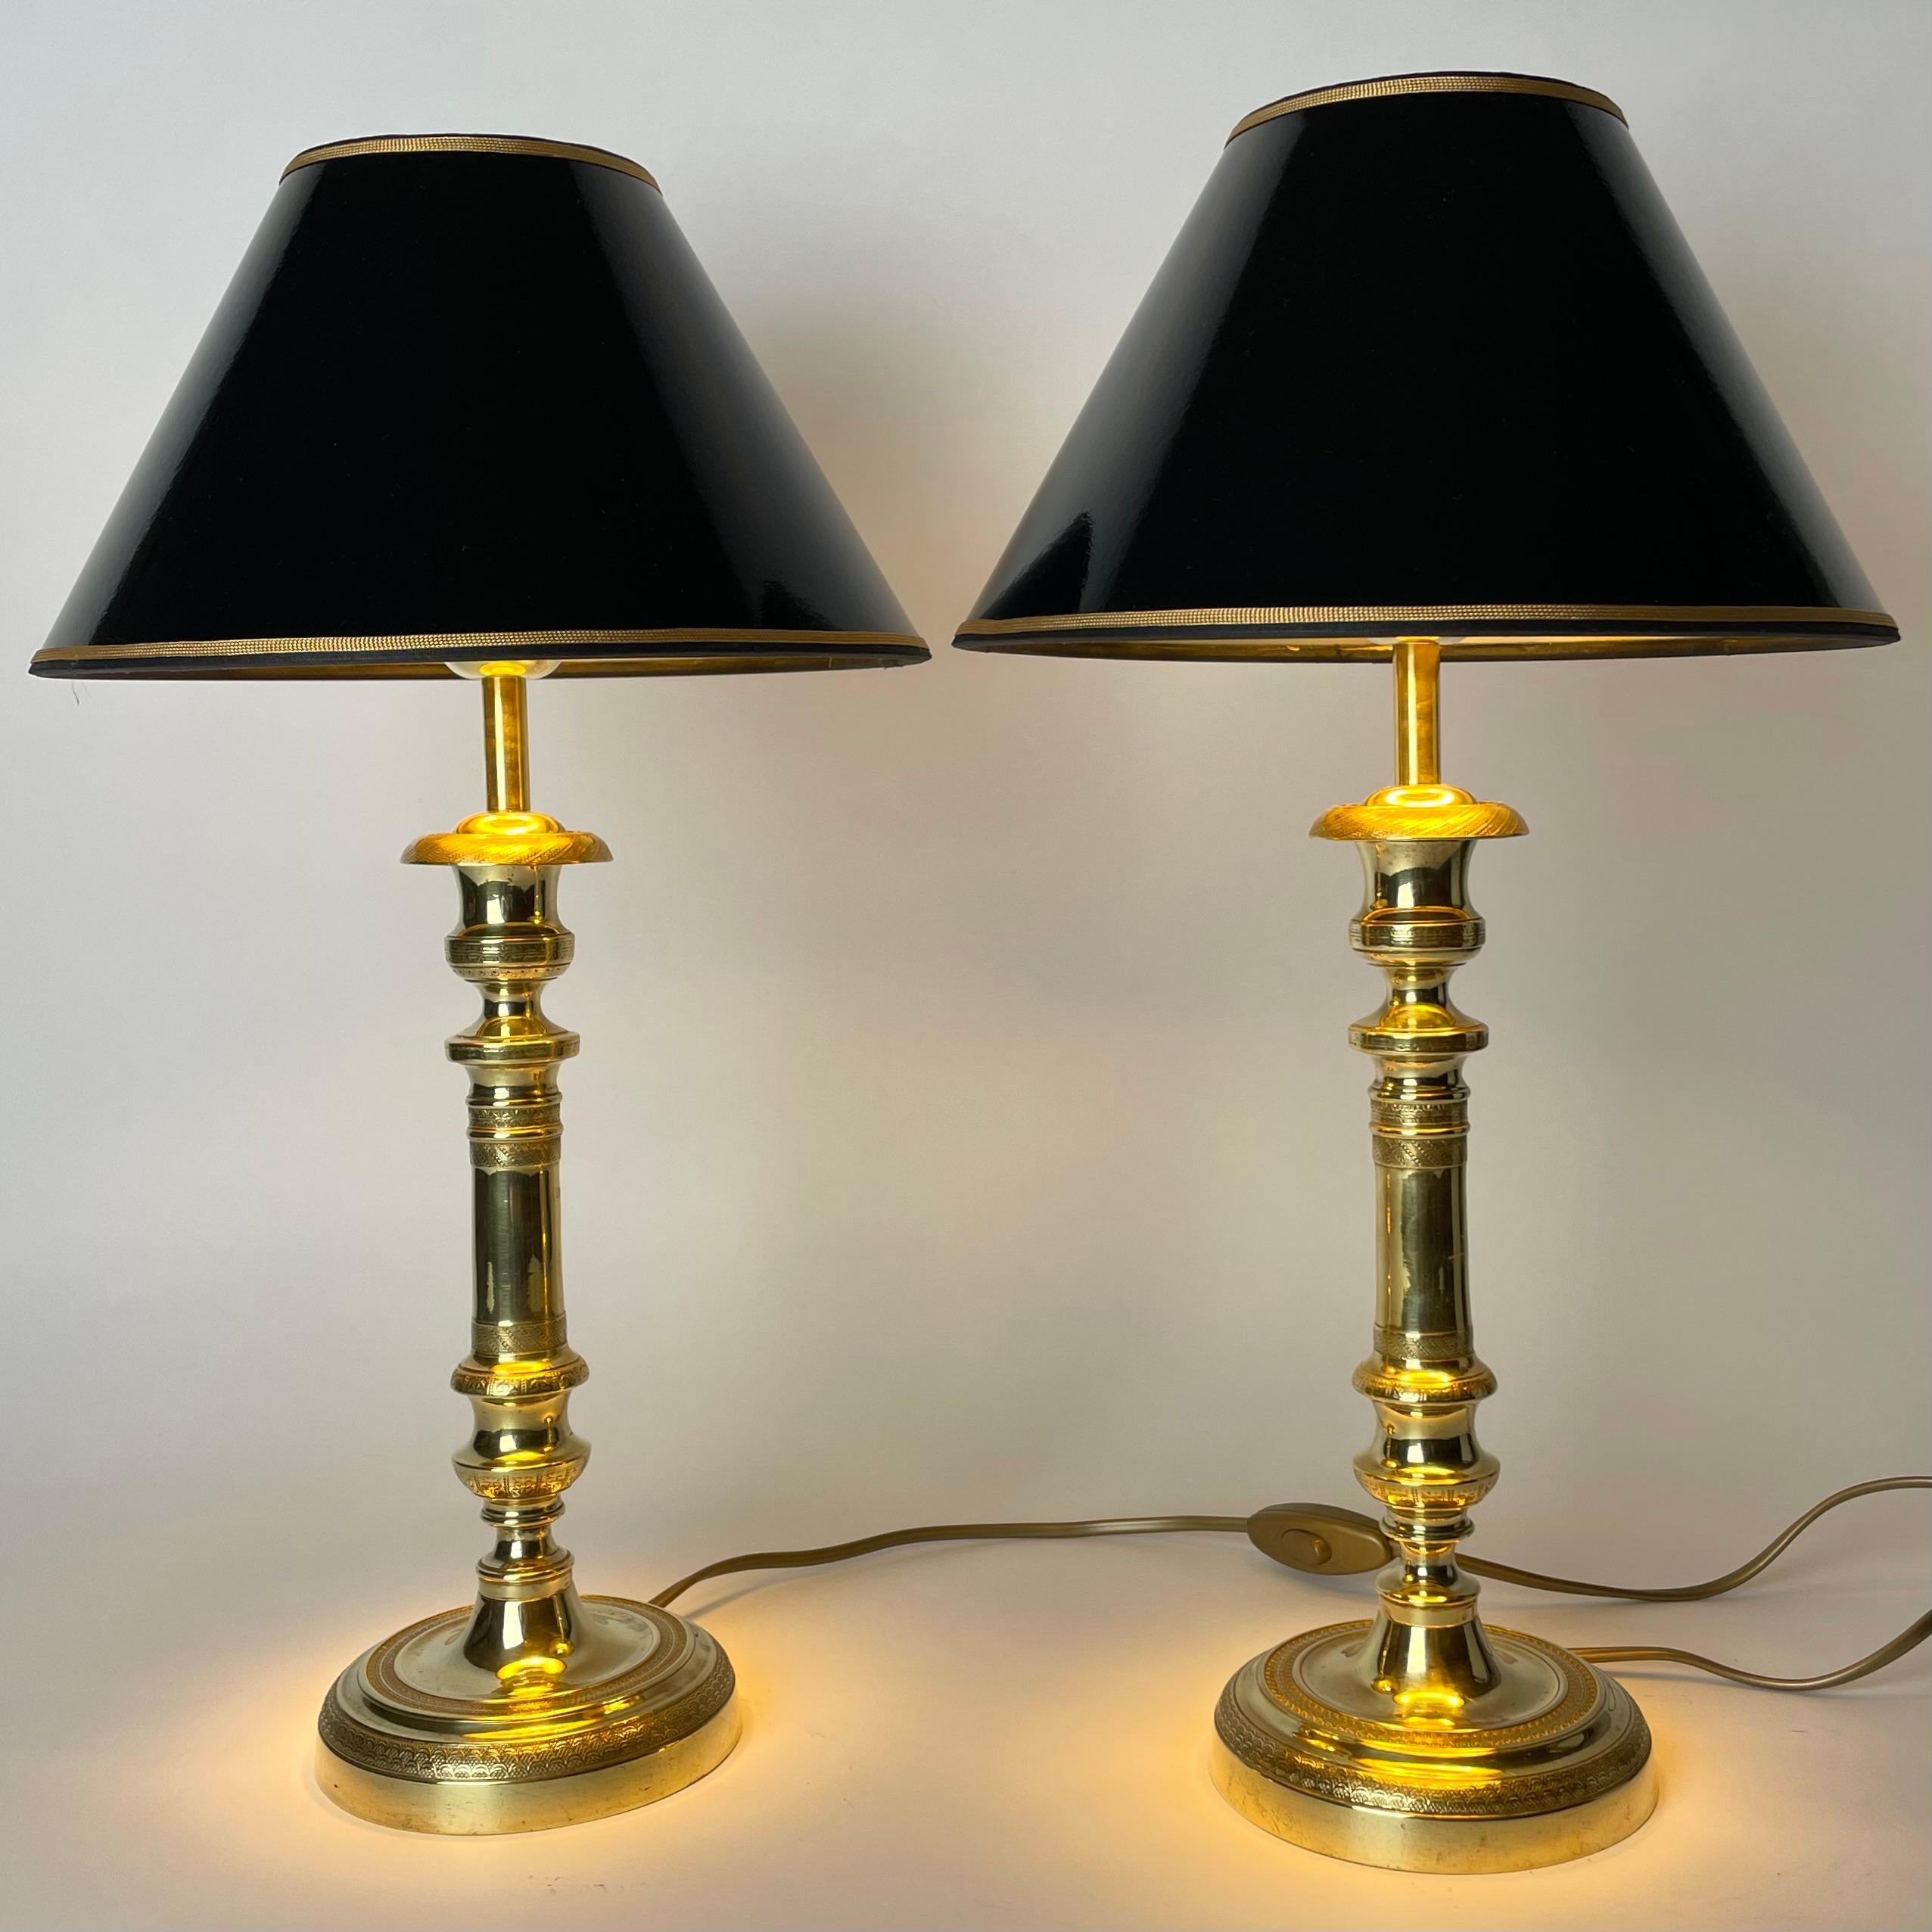 Elegante paire de lampes de table Empire en bronze. Il s'agissait à l'origine d'une paire de chandeliers Empire des années 1820, transformés en lampes de table au début du 20e siècle.

Électricité refaite à neuf 

Nouveaux abat-jour en laque noire